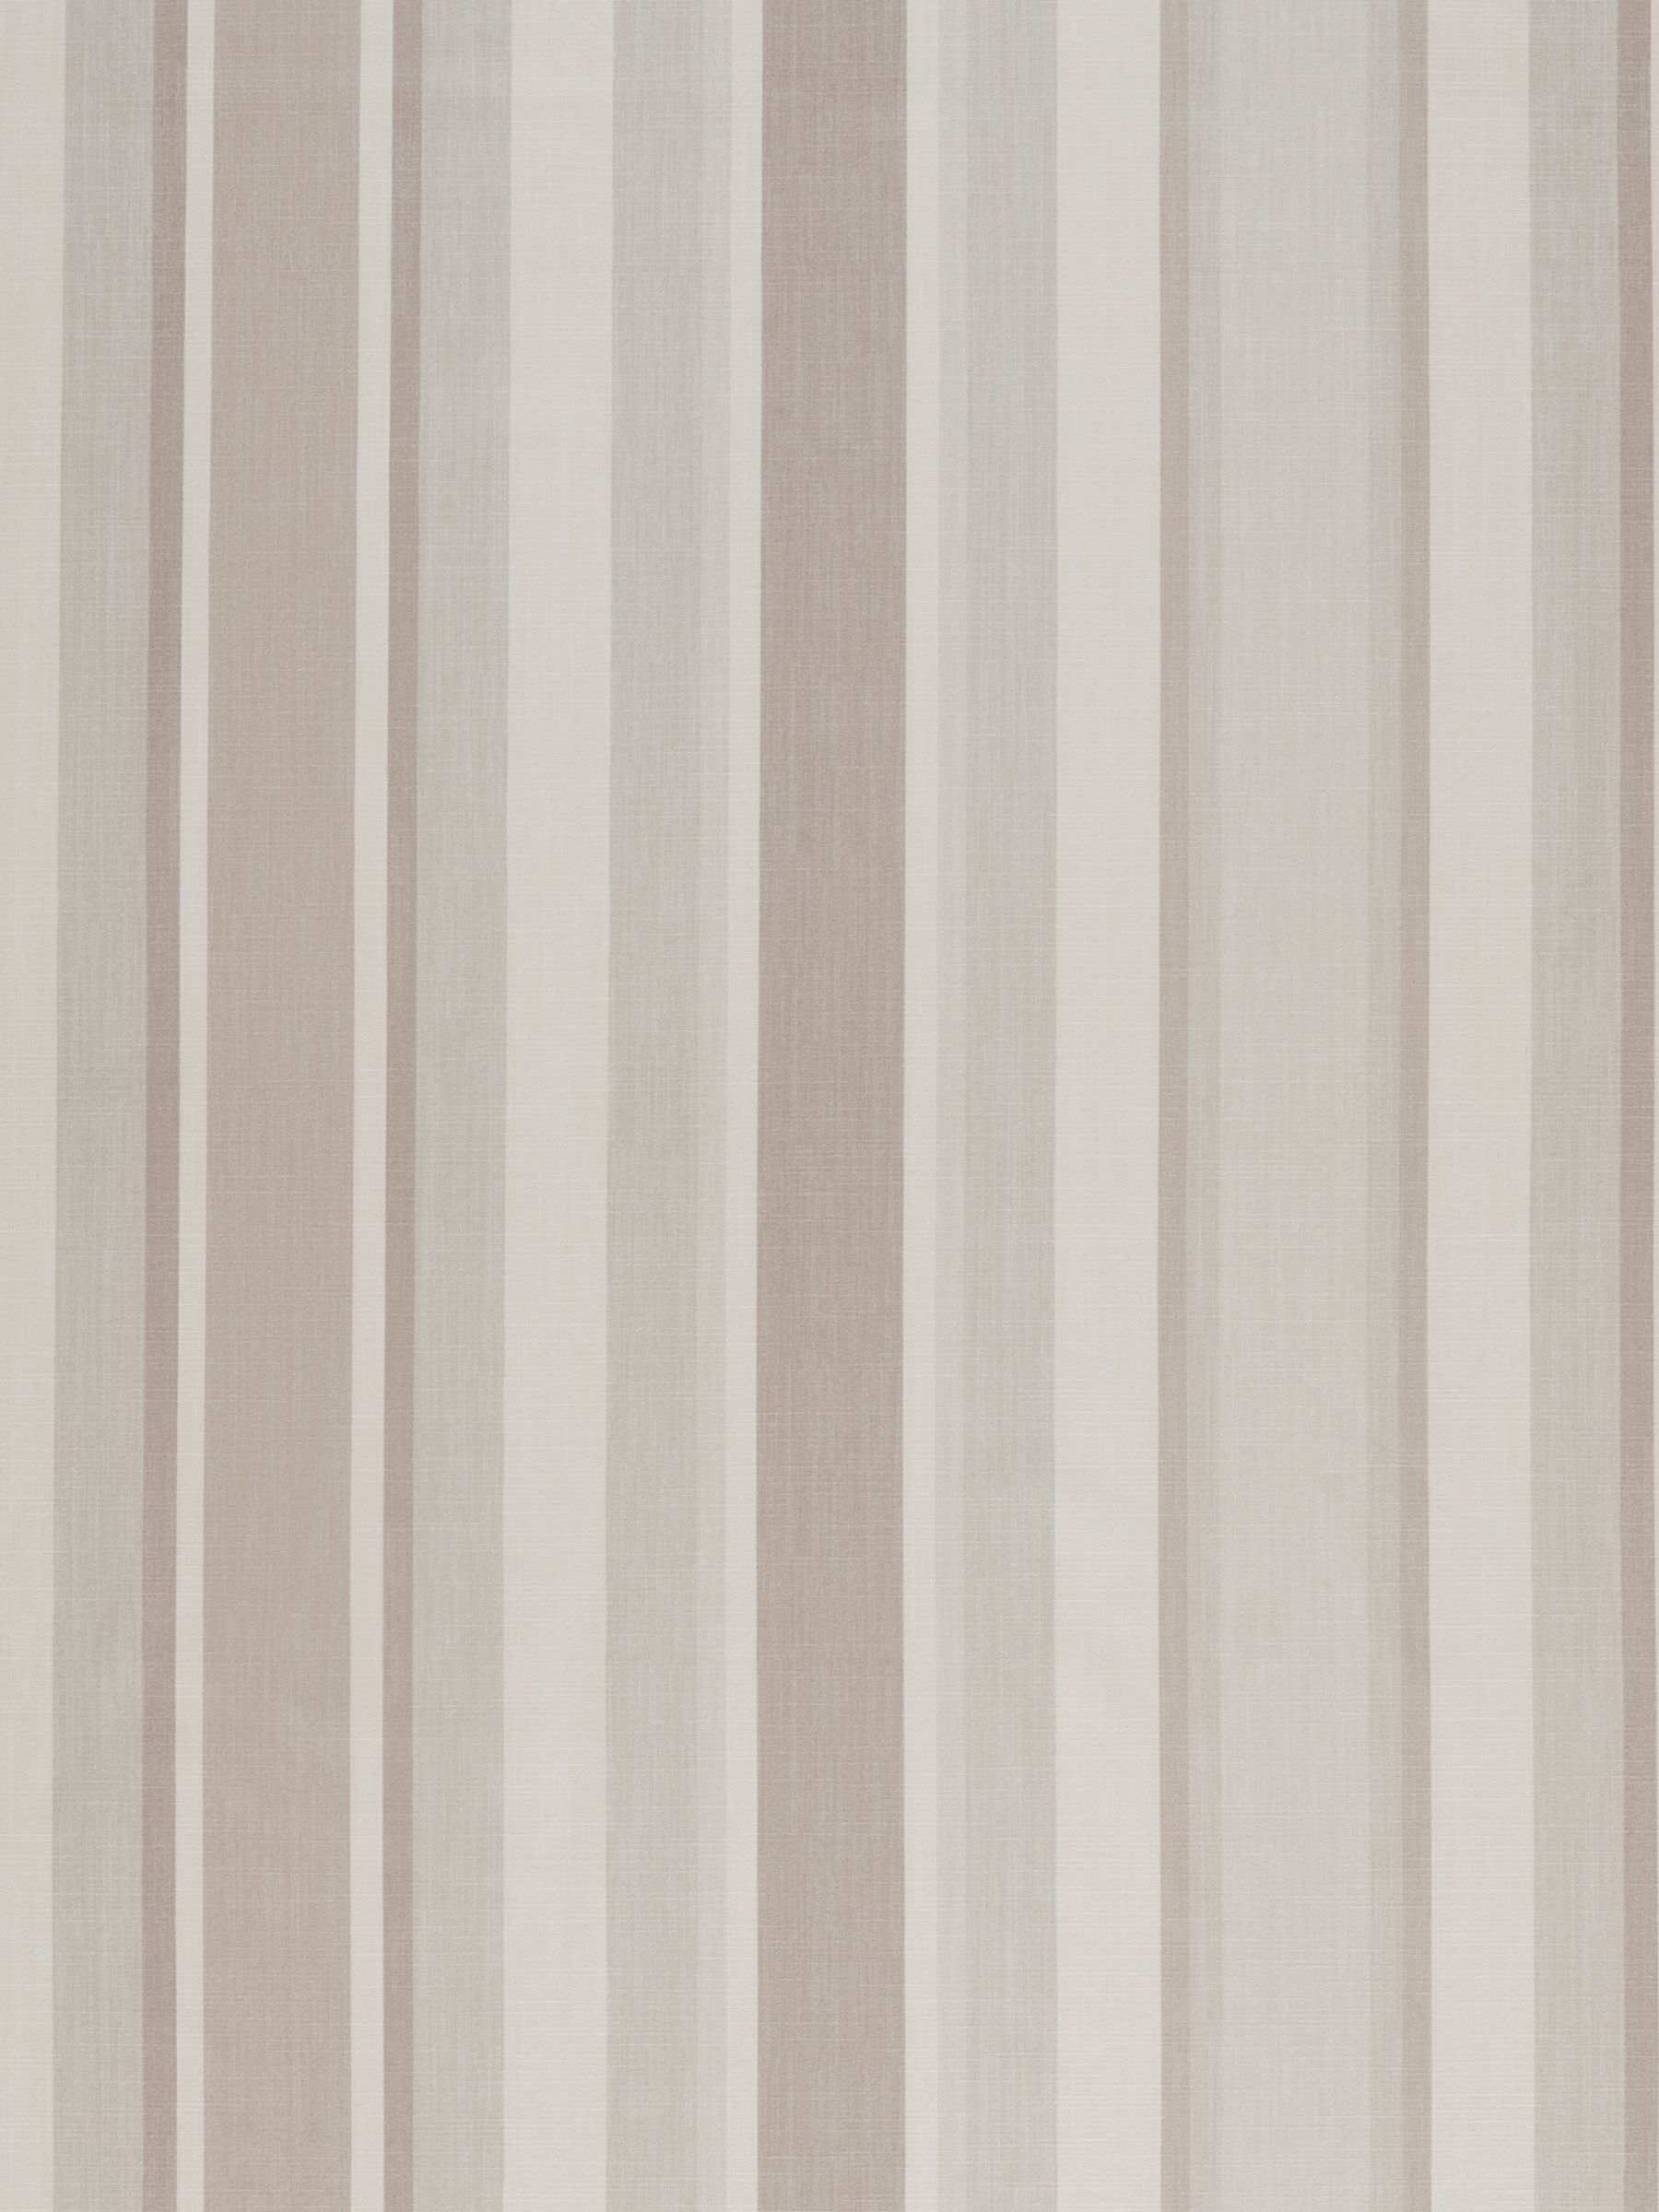 Laura Ashley Awning Stripe Furnishing Fabric, Dove Grey